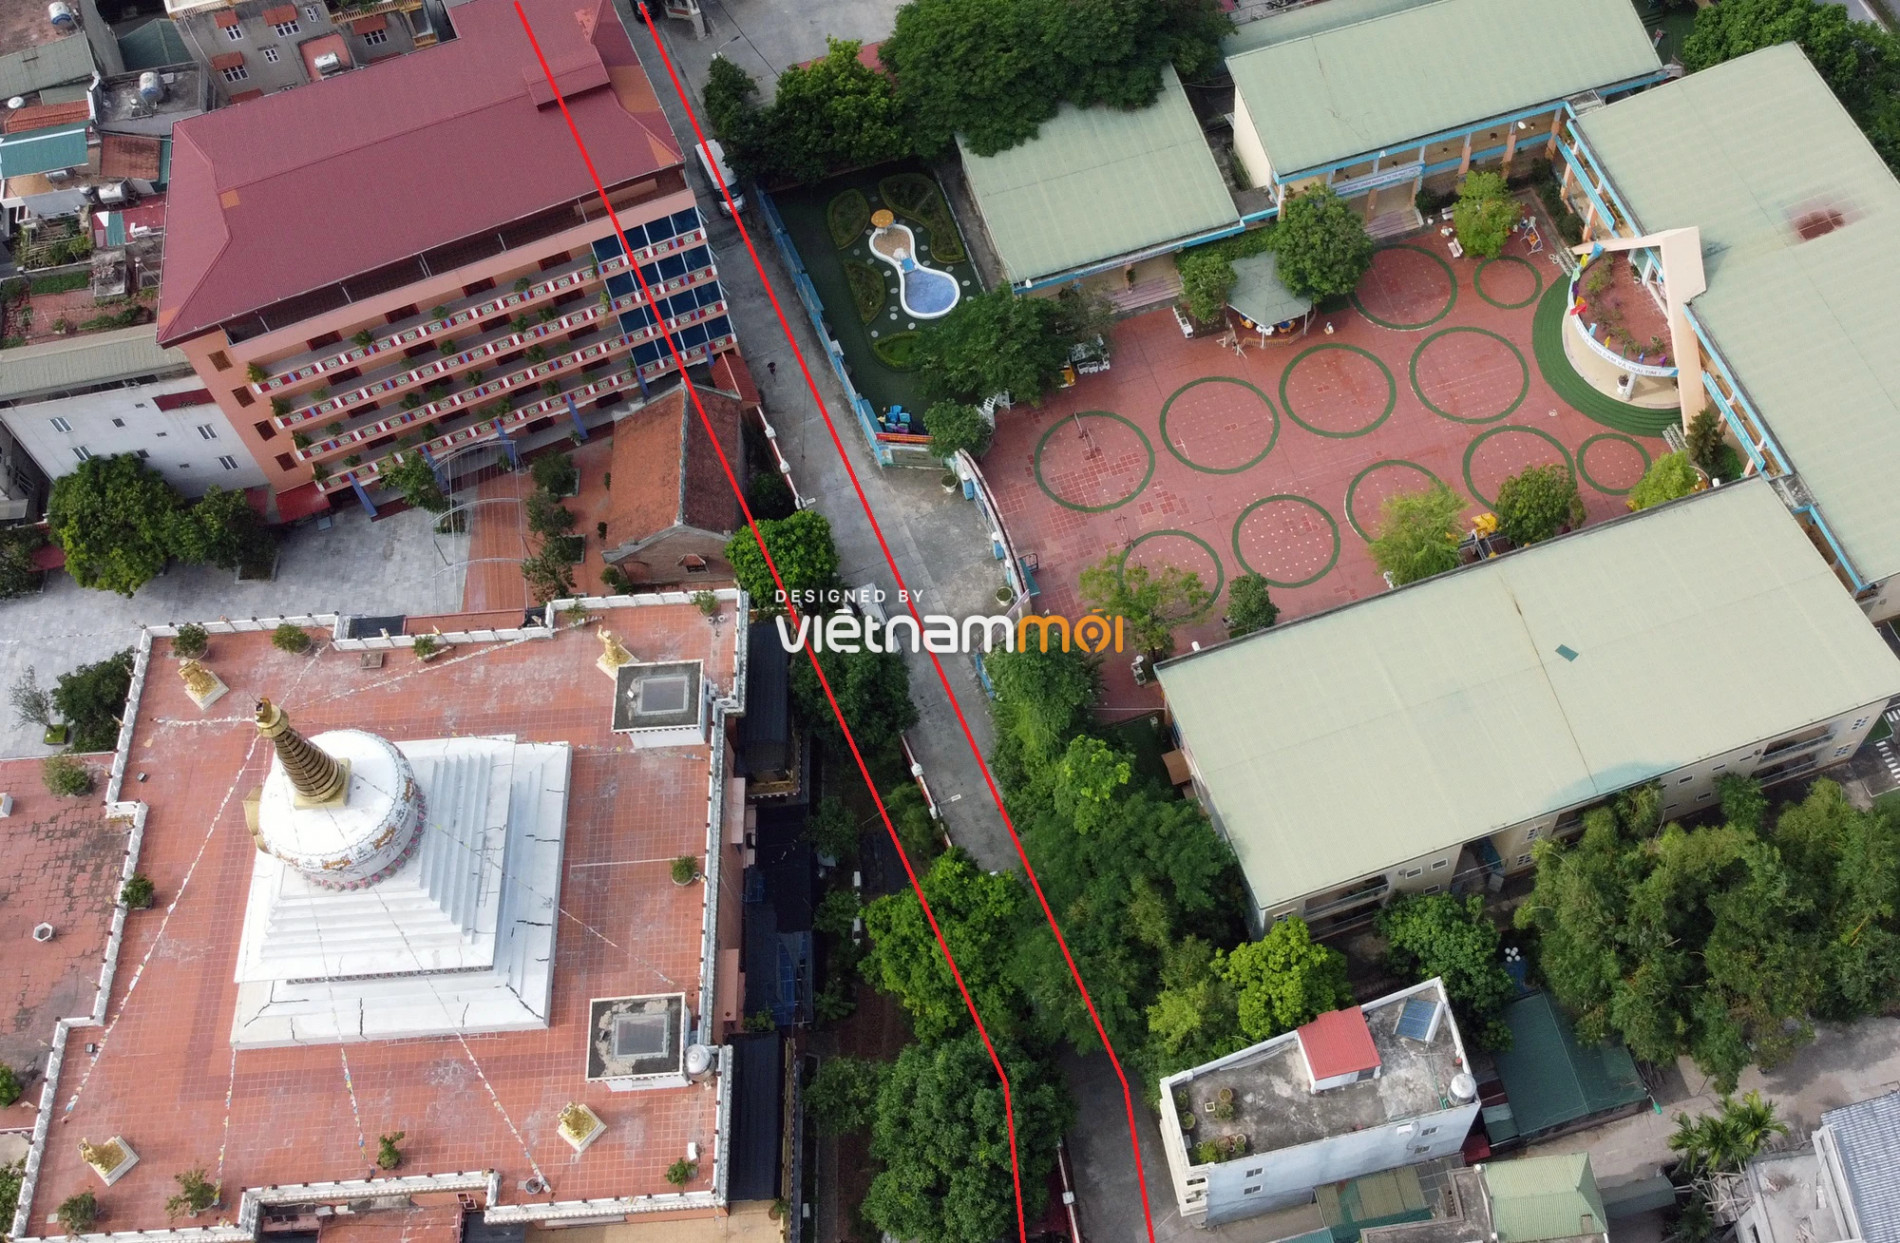 Những khu đất sắp thu hồi để mở đường ở xã Thanh Liệt, Thanh Trì, Hà Nội (phần 7) - Ảnh 5.